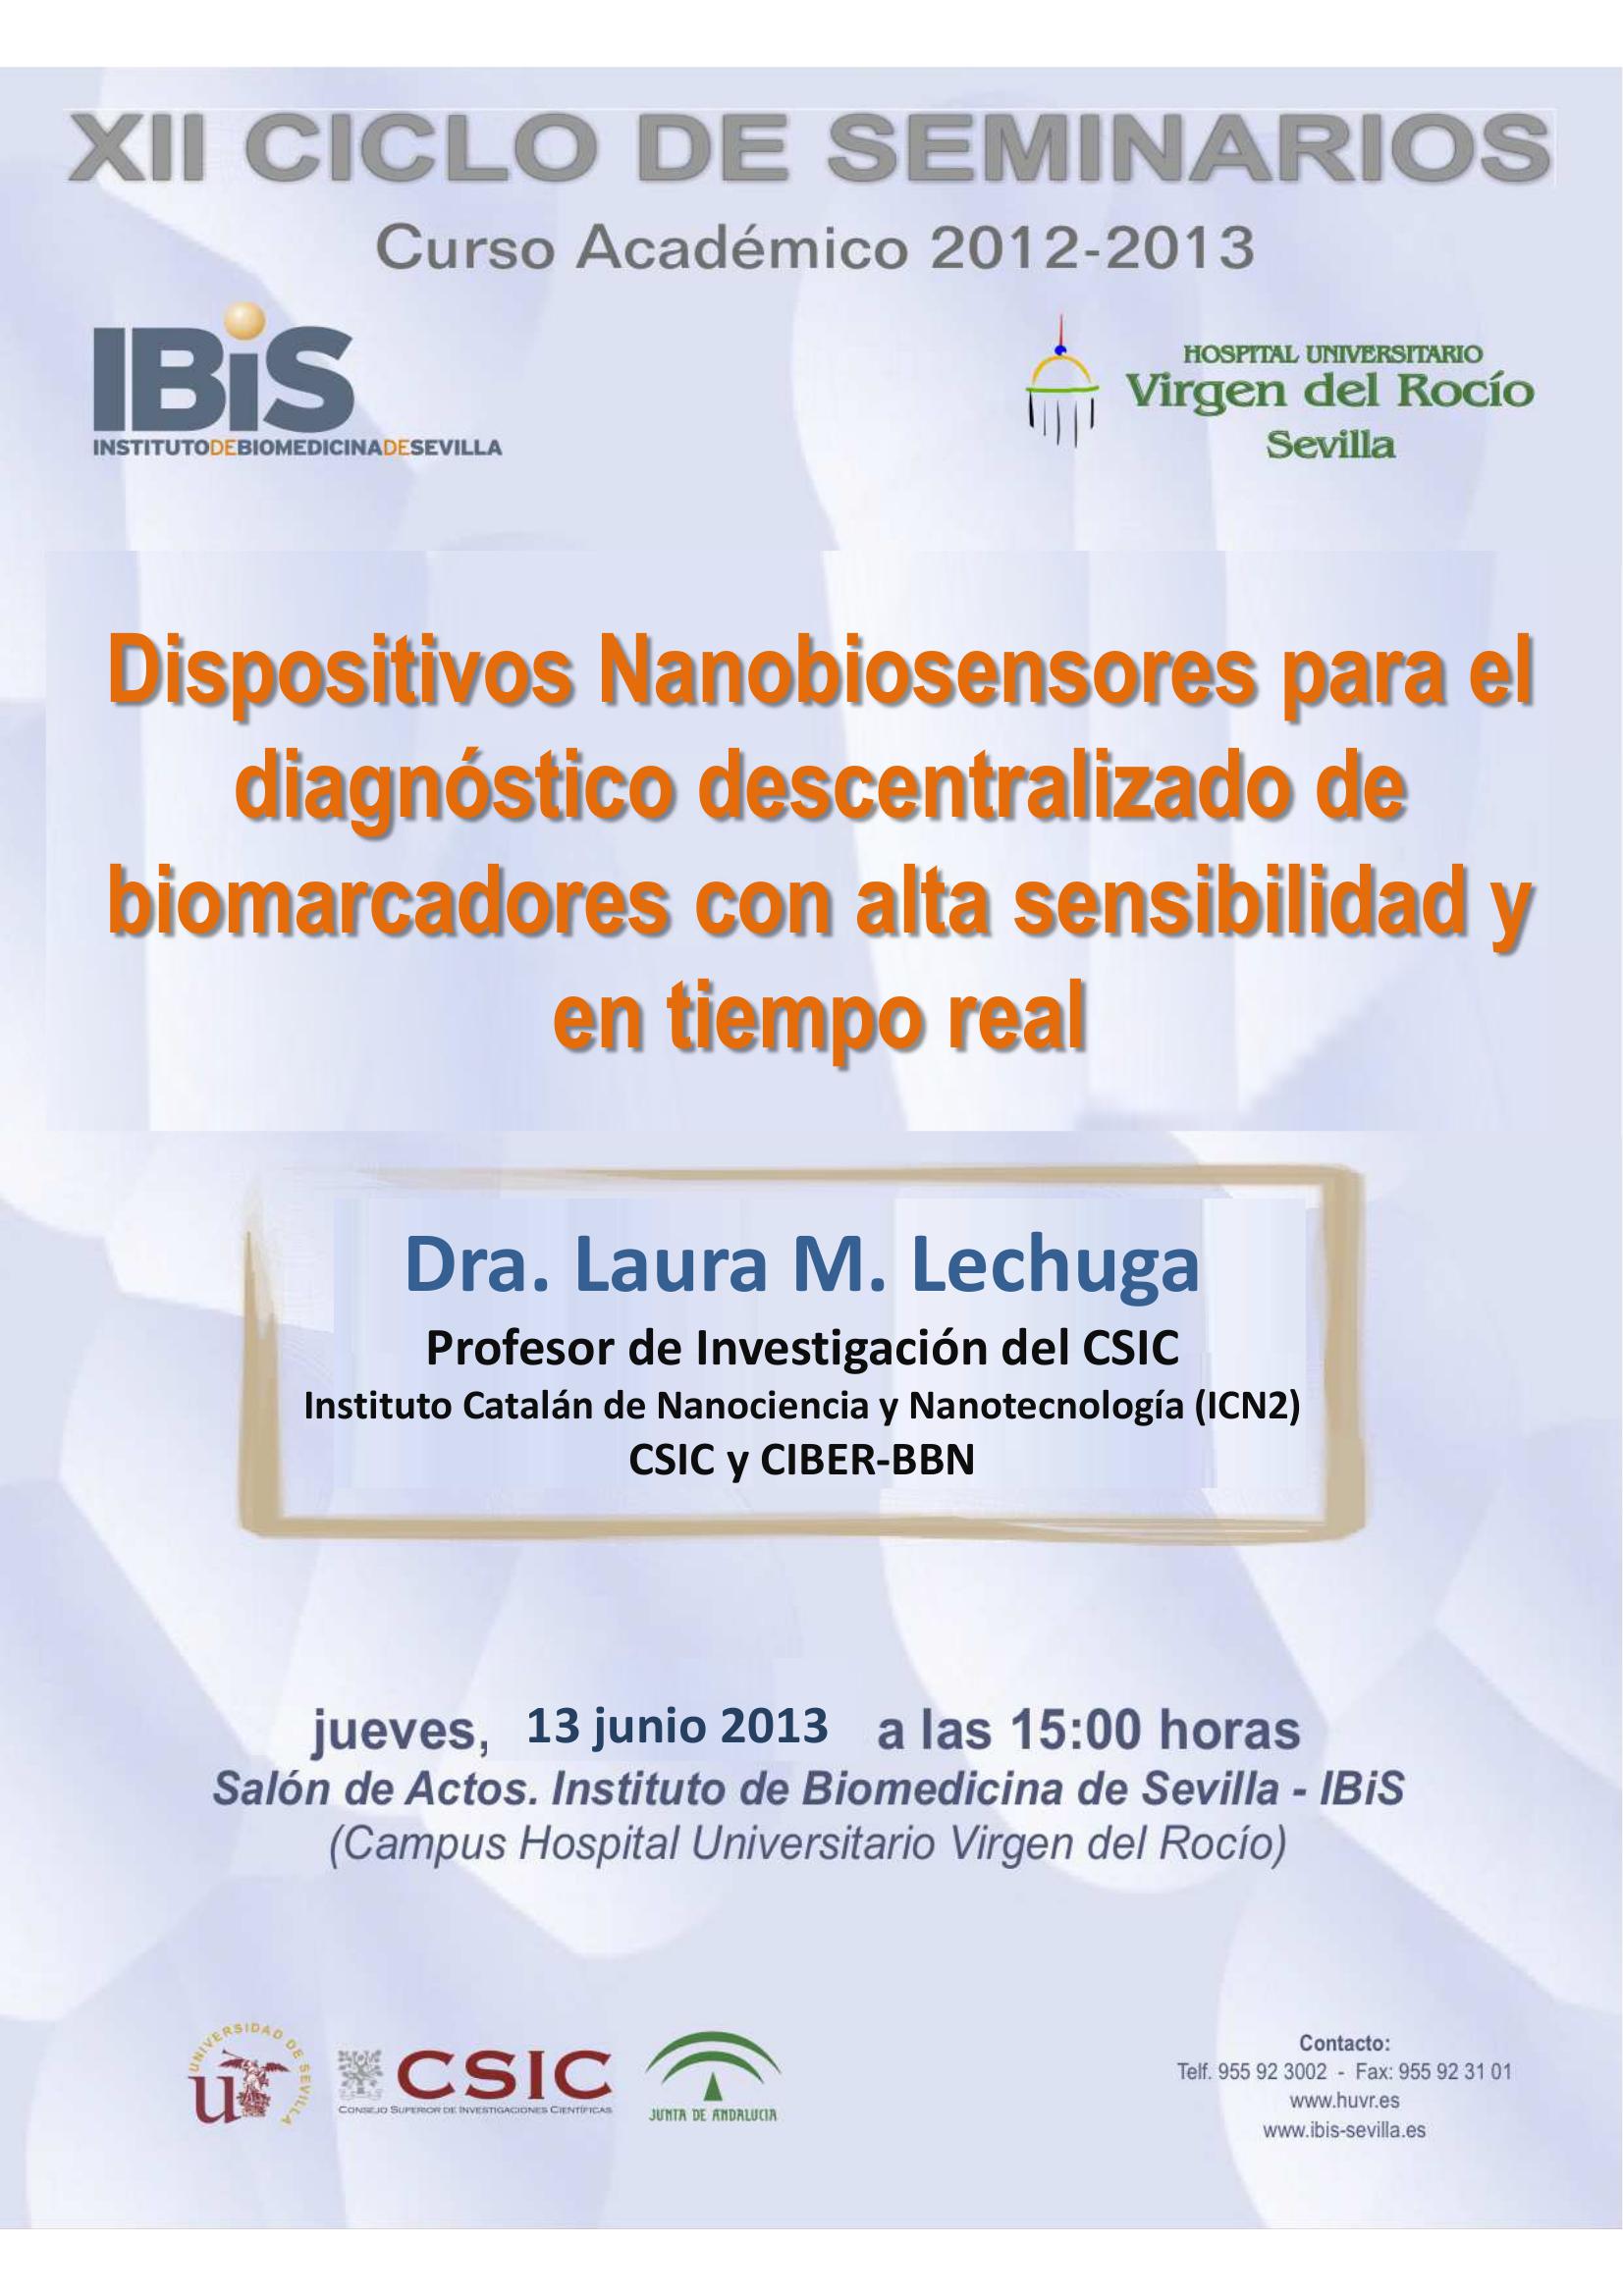 Poster: Dispositivos Nanobiosensores para el diagnóstico descentralizado de biomarcadores con alta sensibilidad y en tiempo real